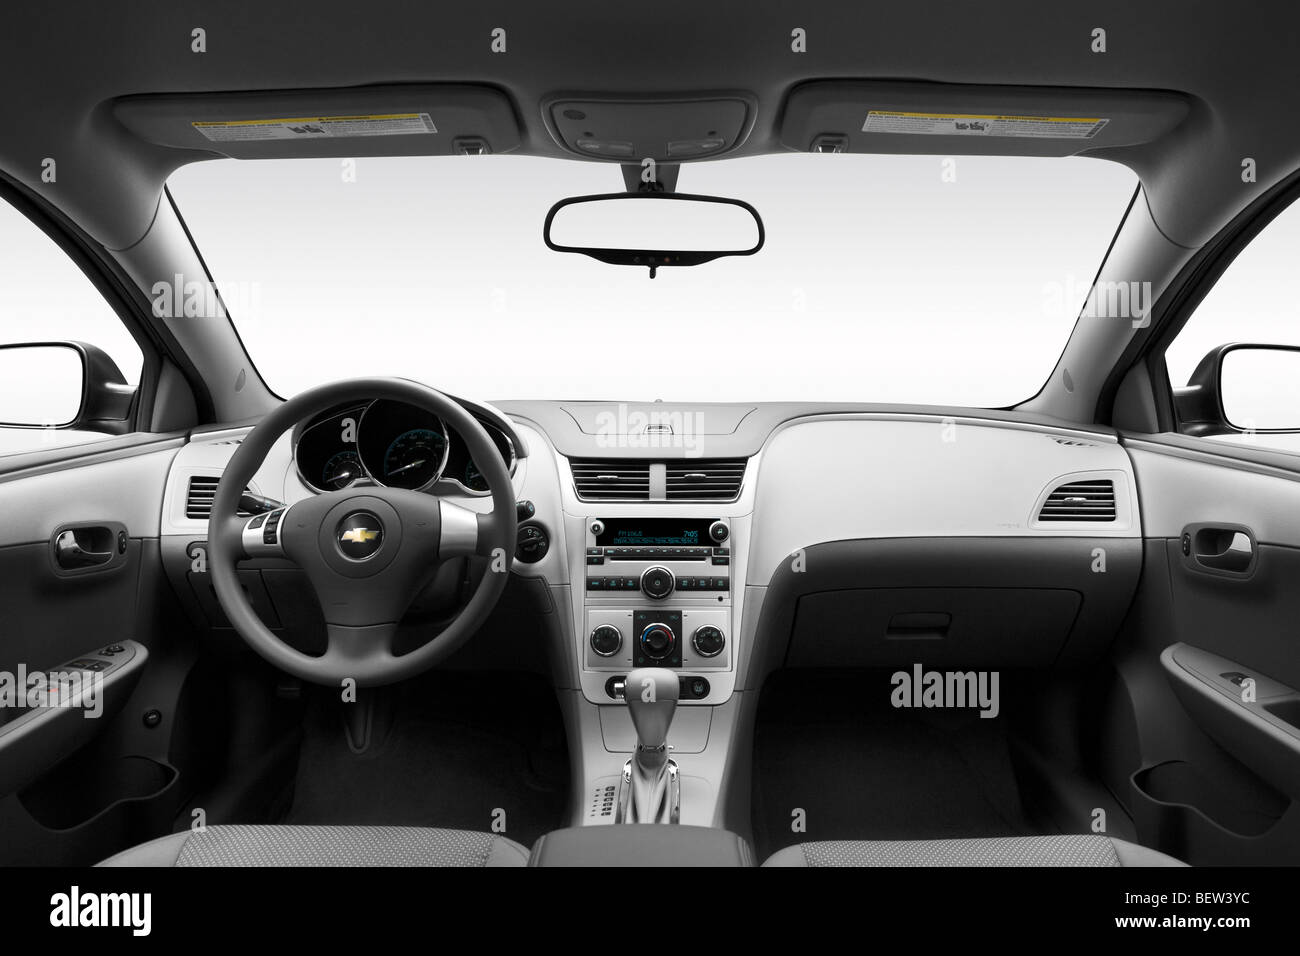 2010 Chevrolet Malibu 1LS in blau - Armaturenbrett, Mittelkonsole, Getriebe Schalthebel Ansicht Stockfoto